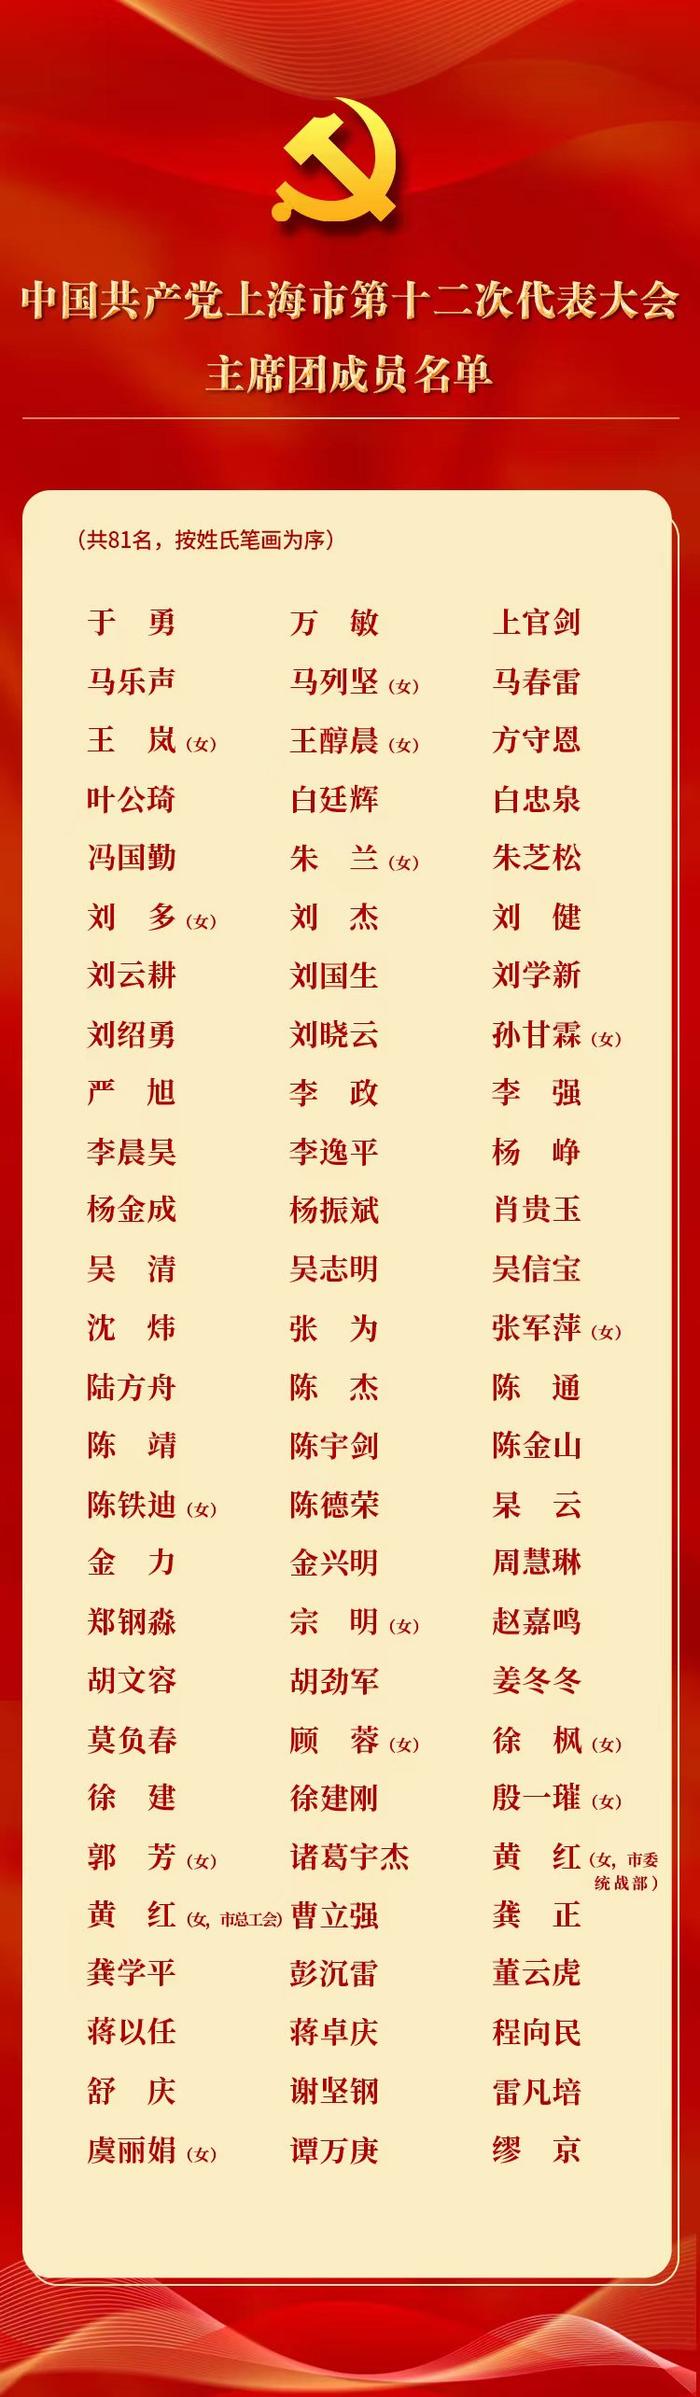 中国共产党上海市第十二次代表大会主席团、主席团常务委员会、秘书长、代表资格审查委员会名单